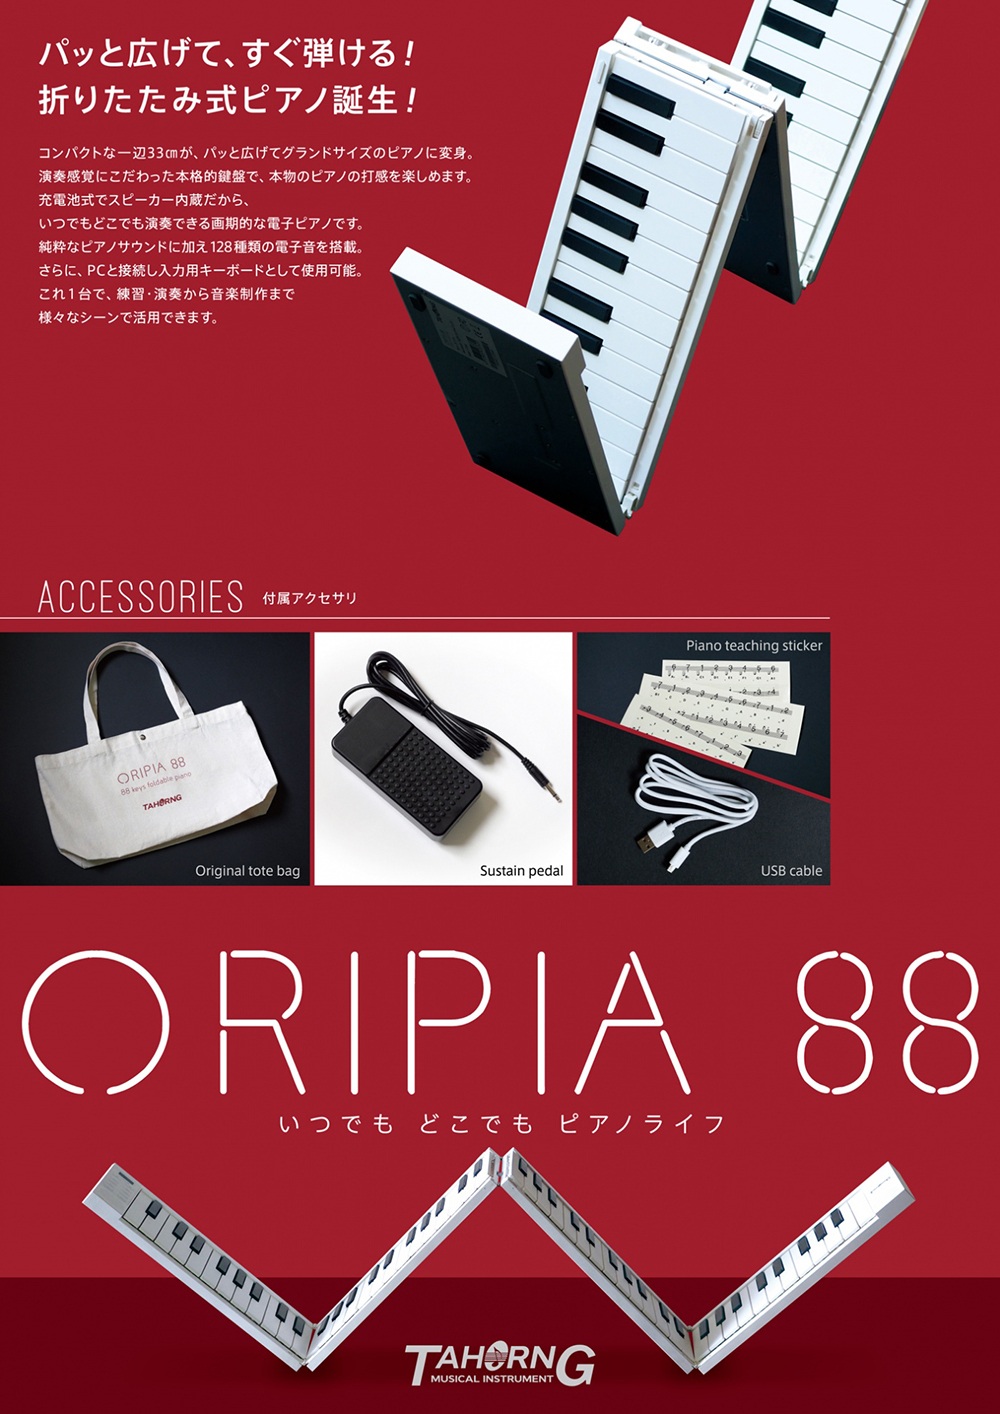 TAHORNG タホーン ORIPIA88 電子ピアノ 折りたたみ式 MIDIキーボード ［OP88］ 送料無料! ワタナベ楽器店  ONLINE SHOP